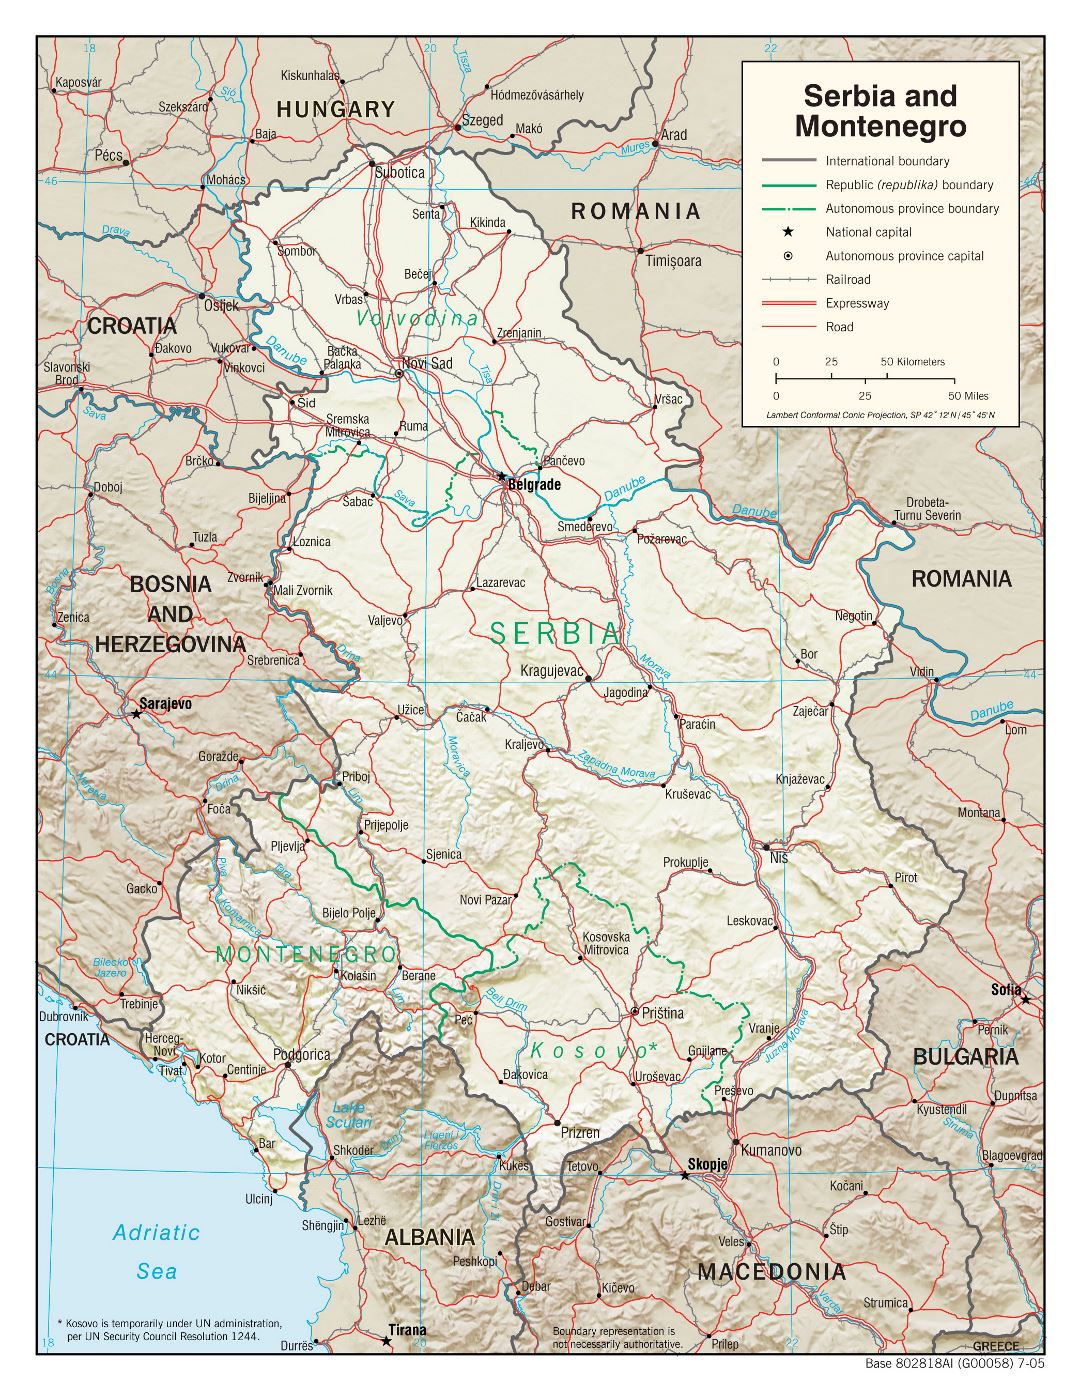 Grande detallado mapa política de Serbia y Montenegro con alivio, carreteras, vías férreas y principales ciudades - 2005